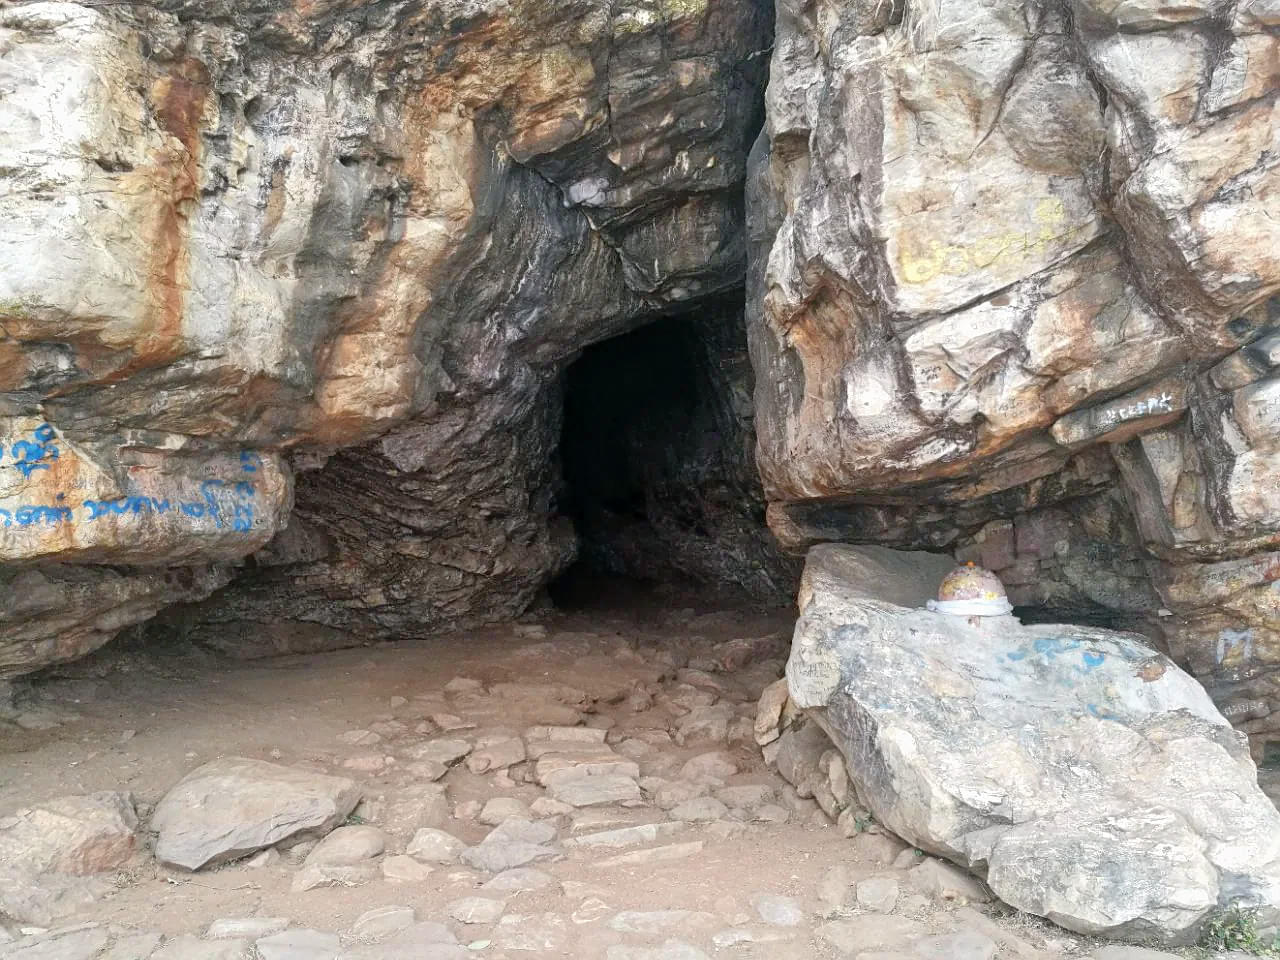 Saptaparni Cave, Rajgir Overview